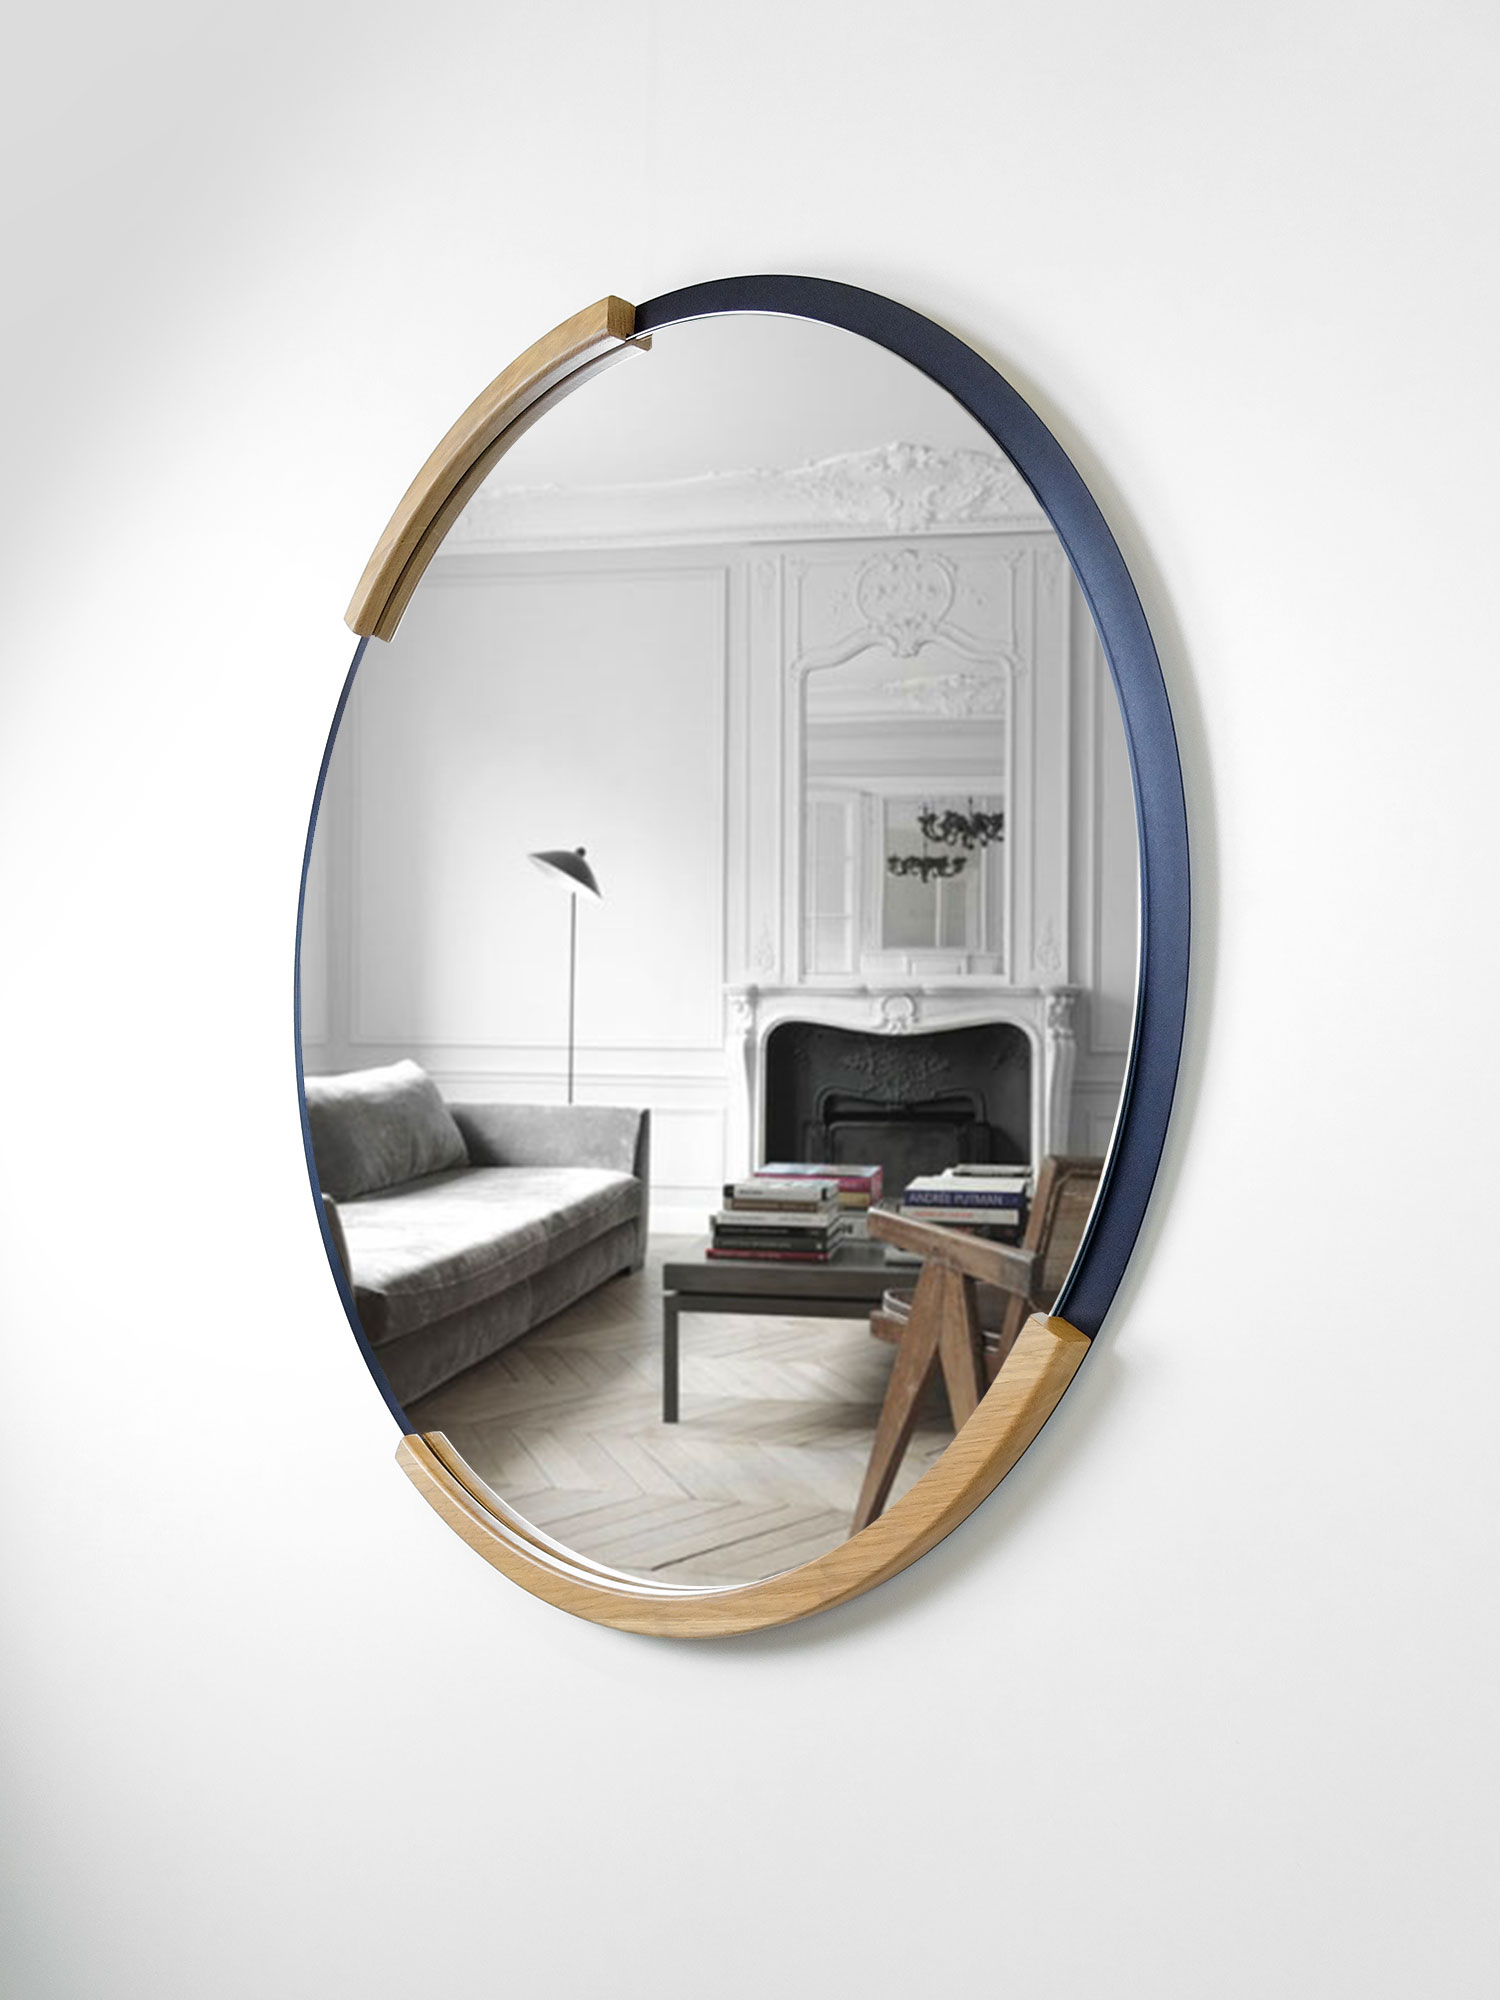 Un Miroir Rond A Un Diametre De 95 Cm Miroir rond Muse 100 cm / design épuré / Fabrication Française